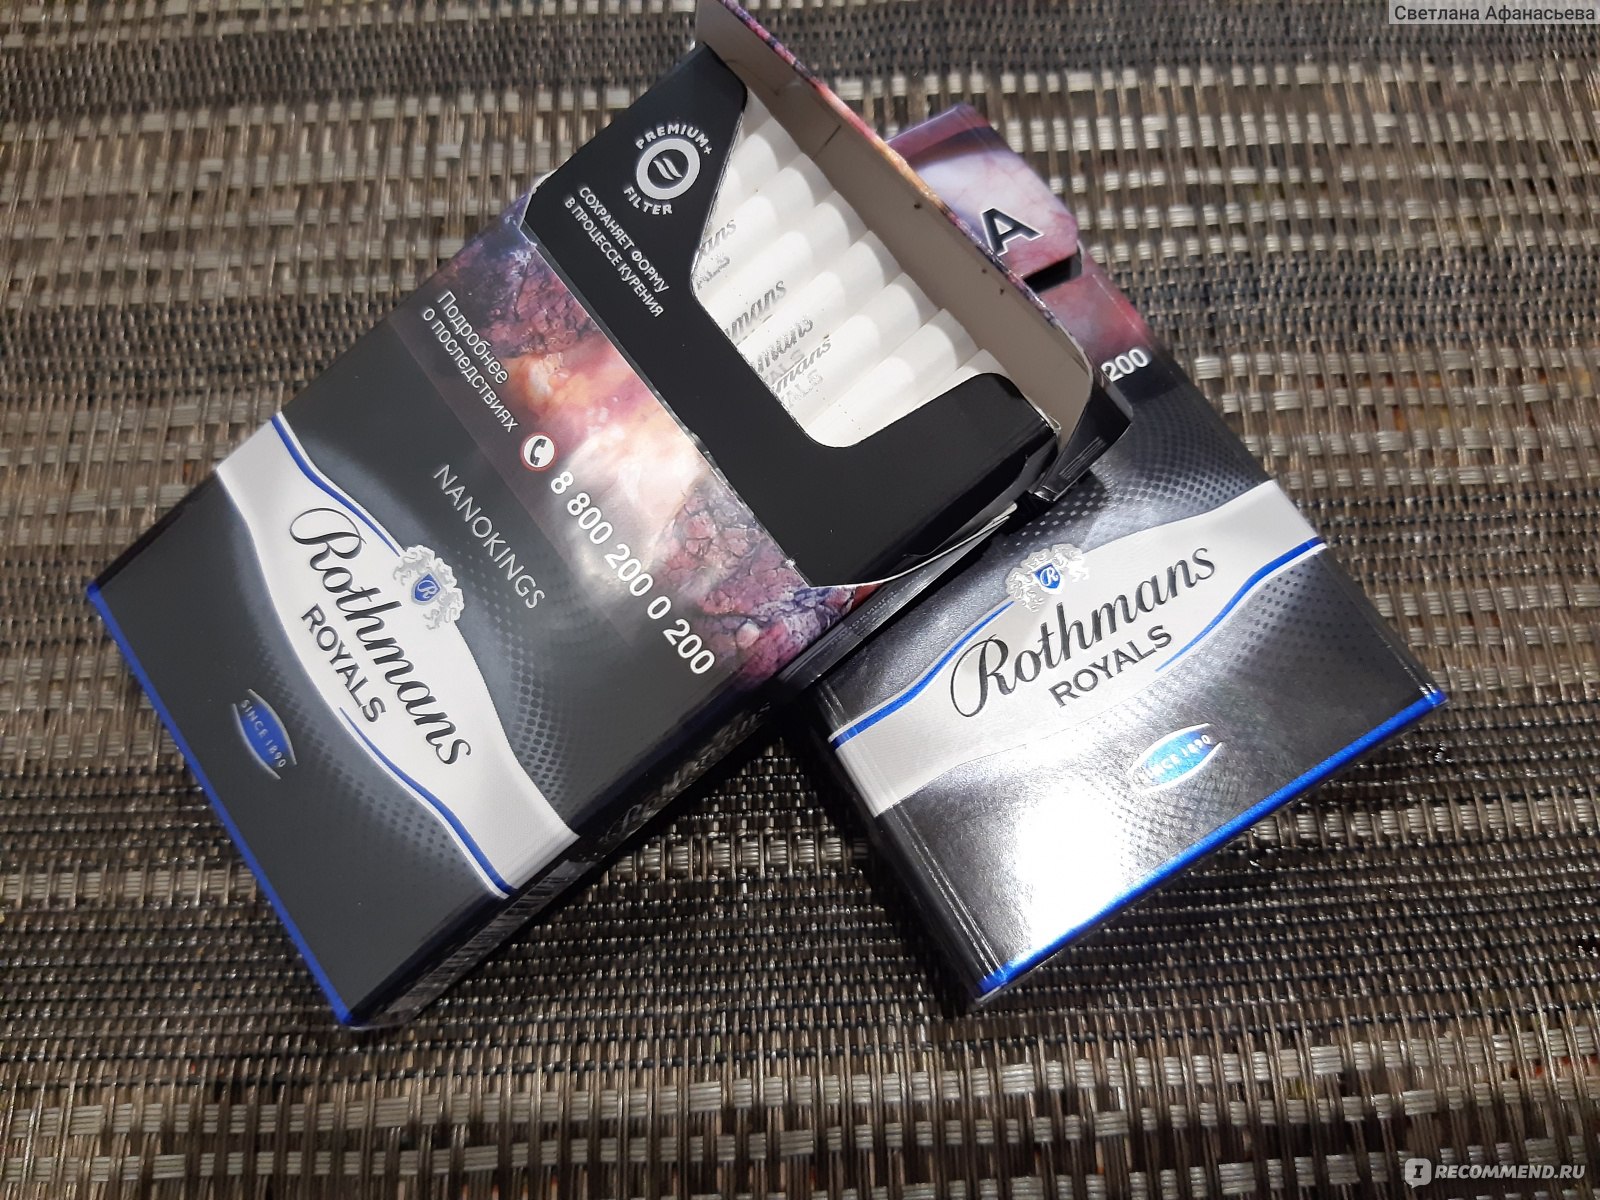 Ротманс компакт синий. Сигареты Rothmans Royals. Сигареты ротманс нанокингс. Сигареты Rothmans компакт. Сигареты Rothmans черные.